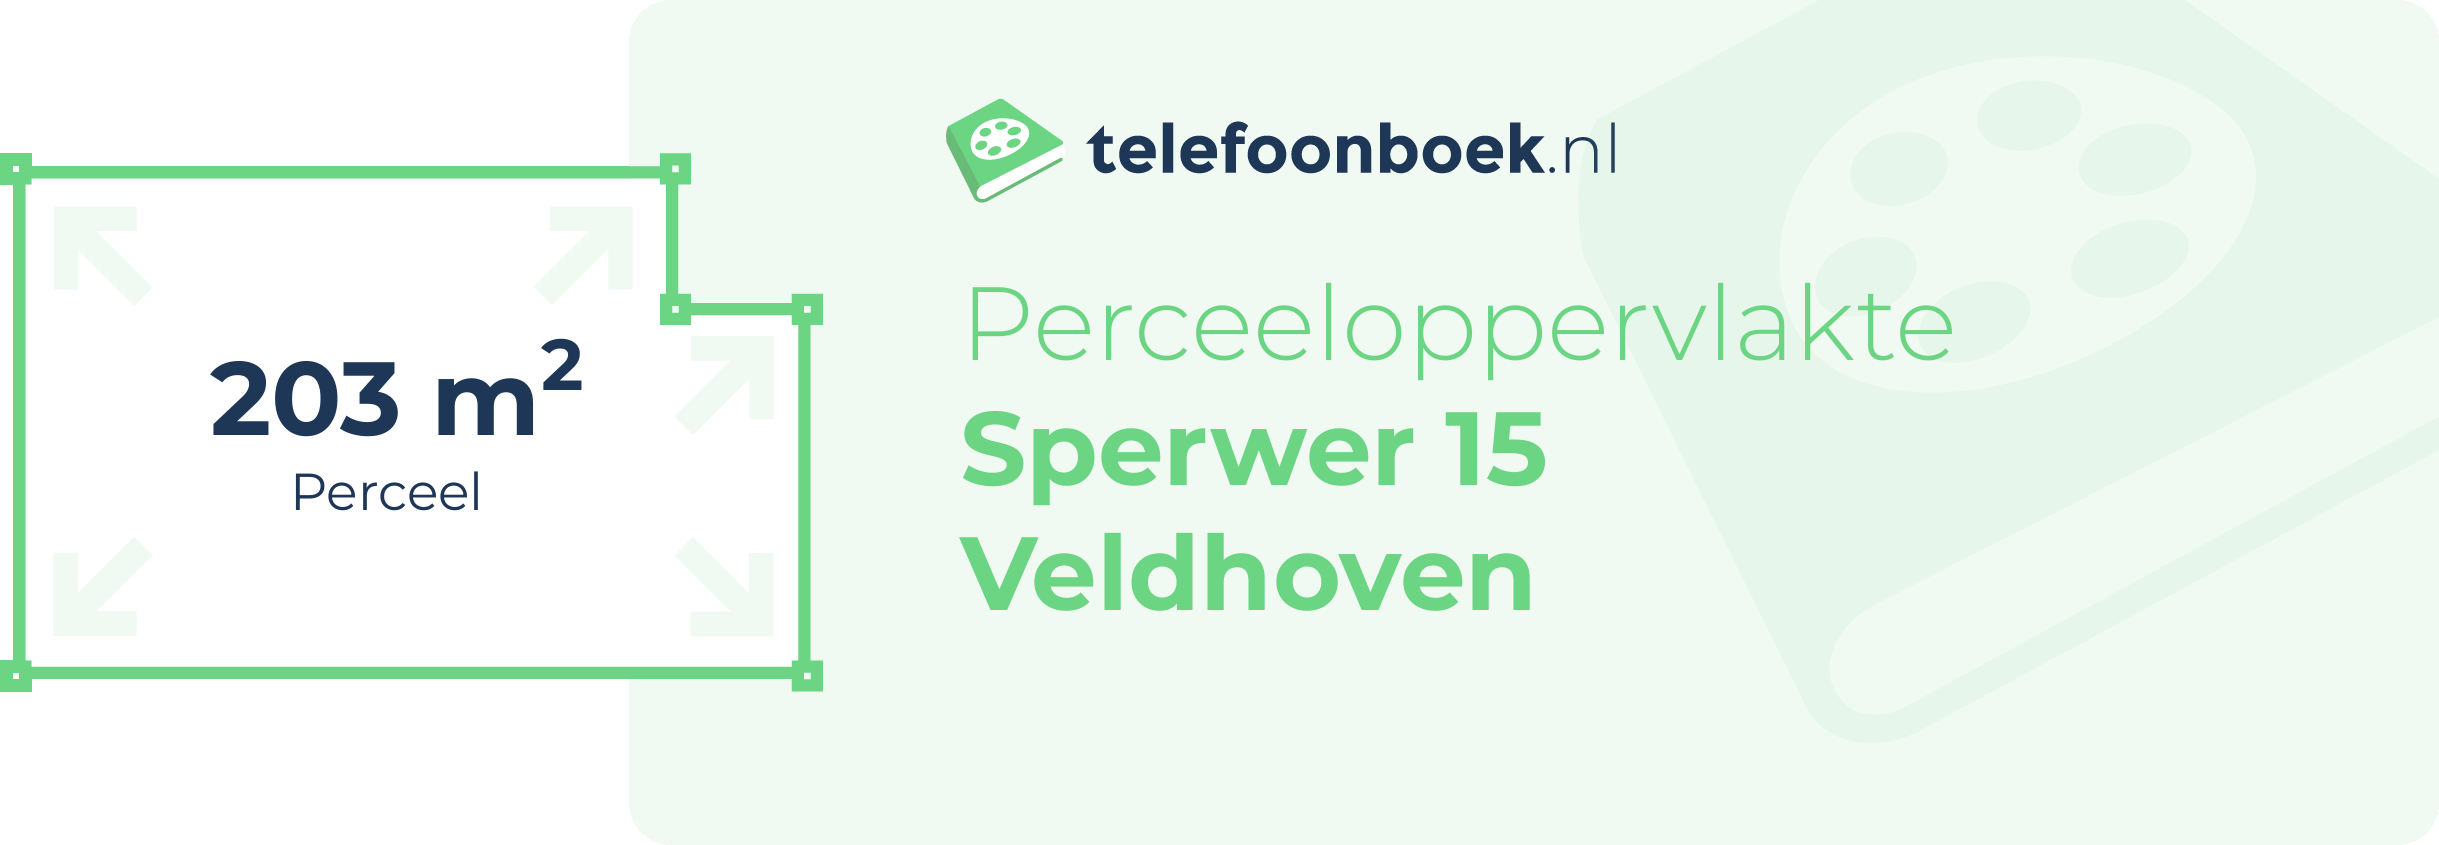 Perceeloppervlakte Sperwer 15 Veldhoven